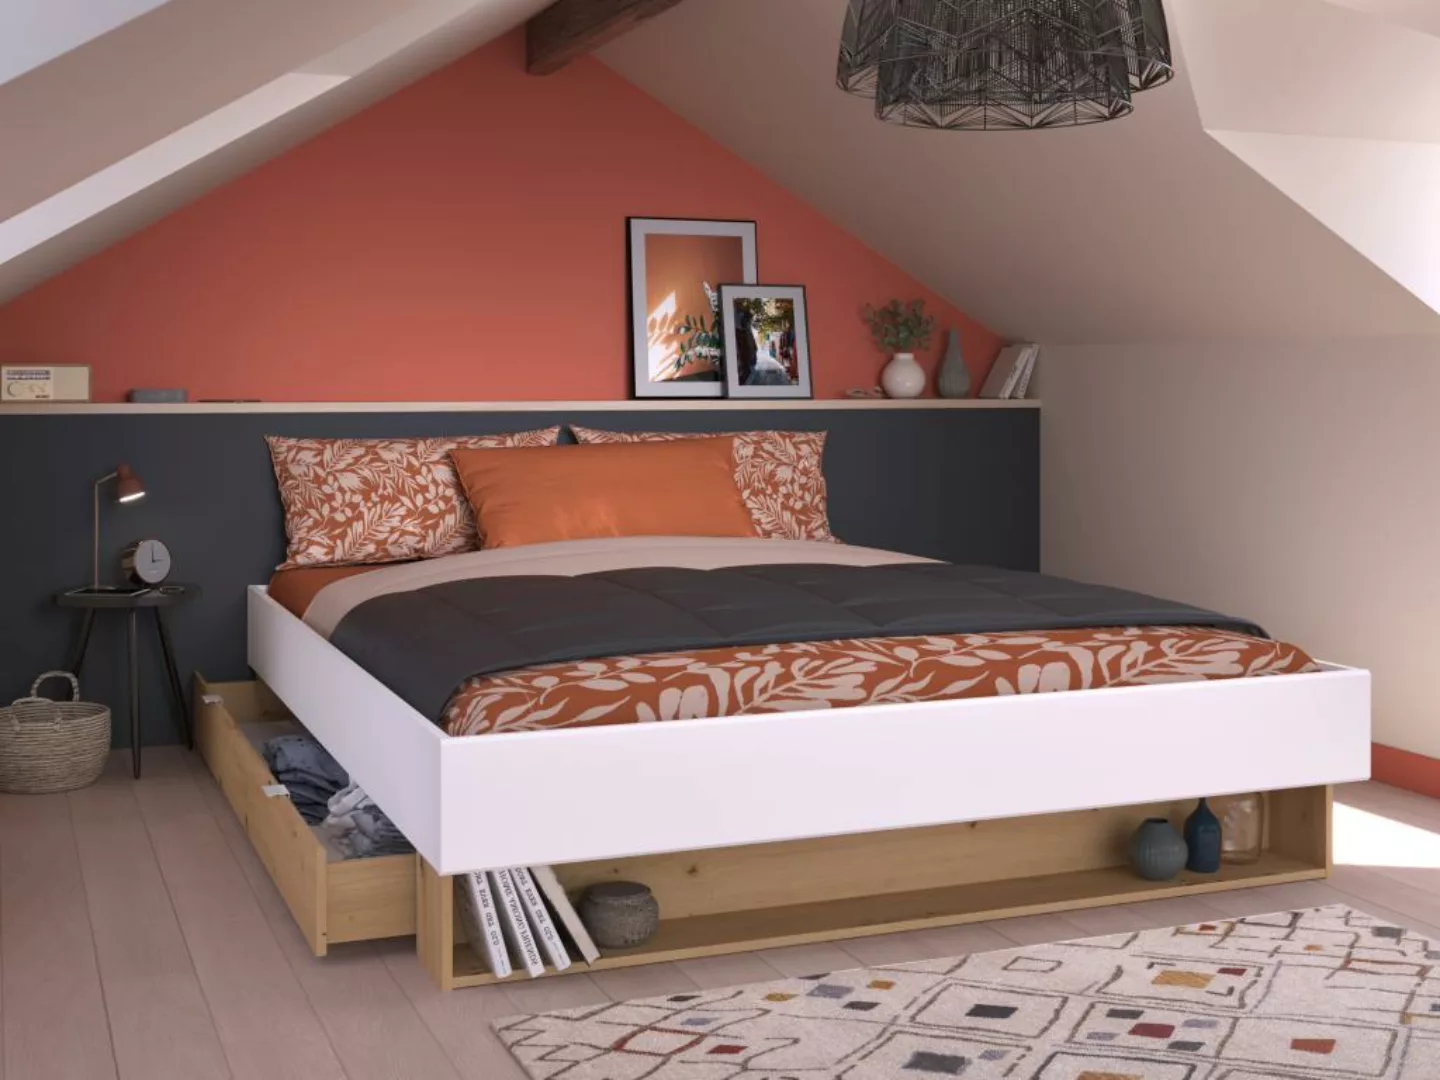 Bett mit 1 Schublade & 1 Ablage + Lattenrost + Matratze - 160 x 200 cm - We günstig online kaufen